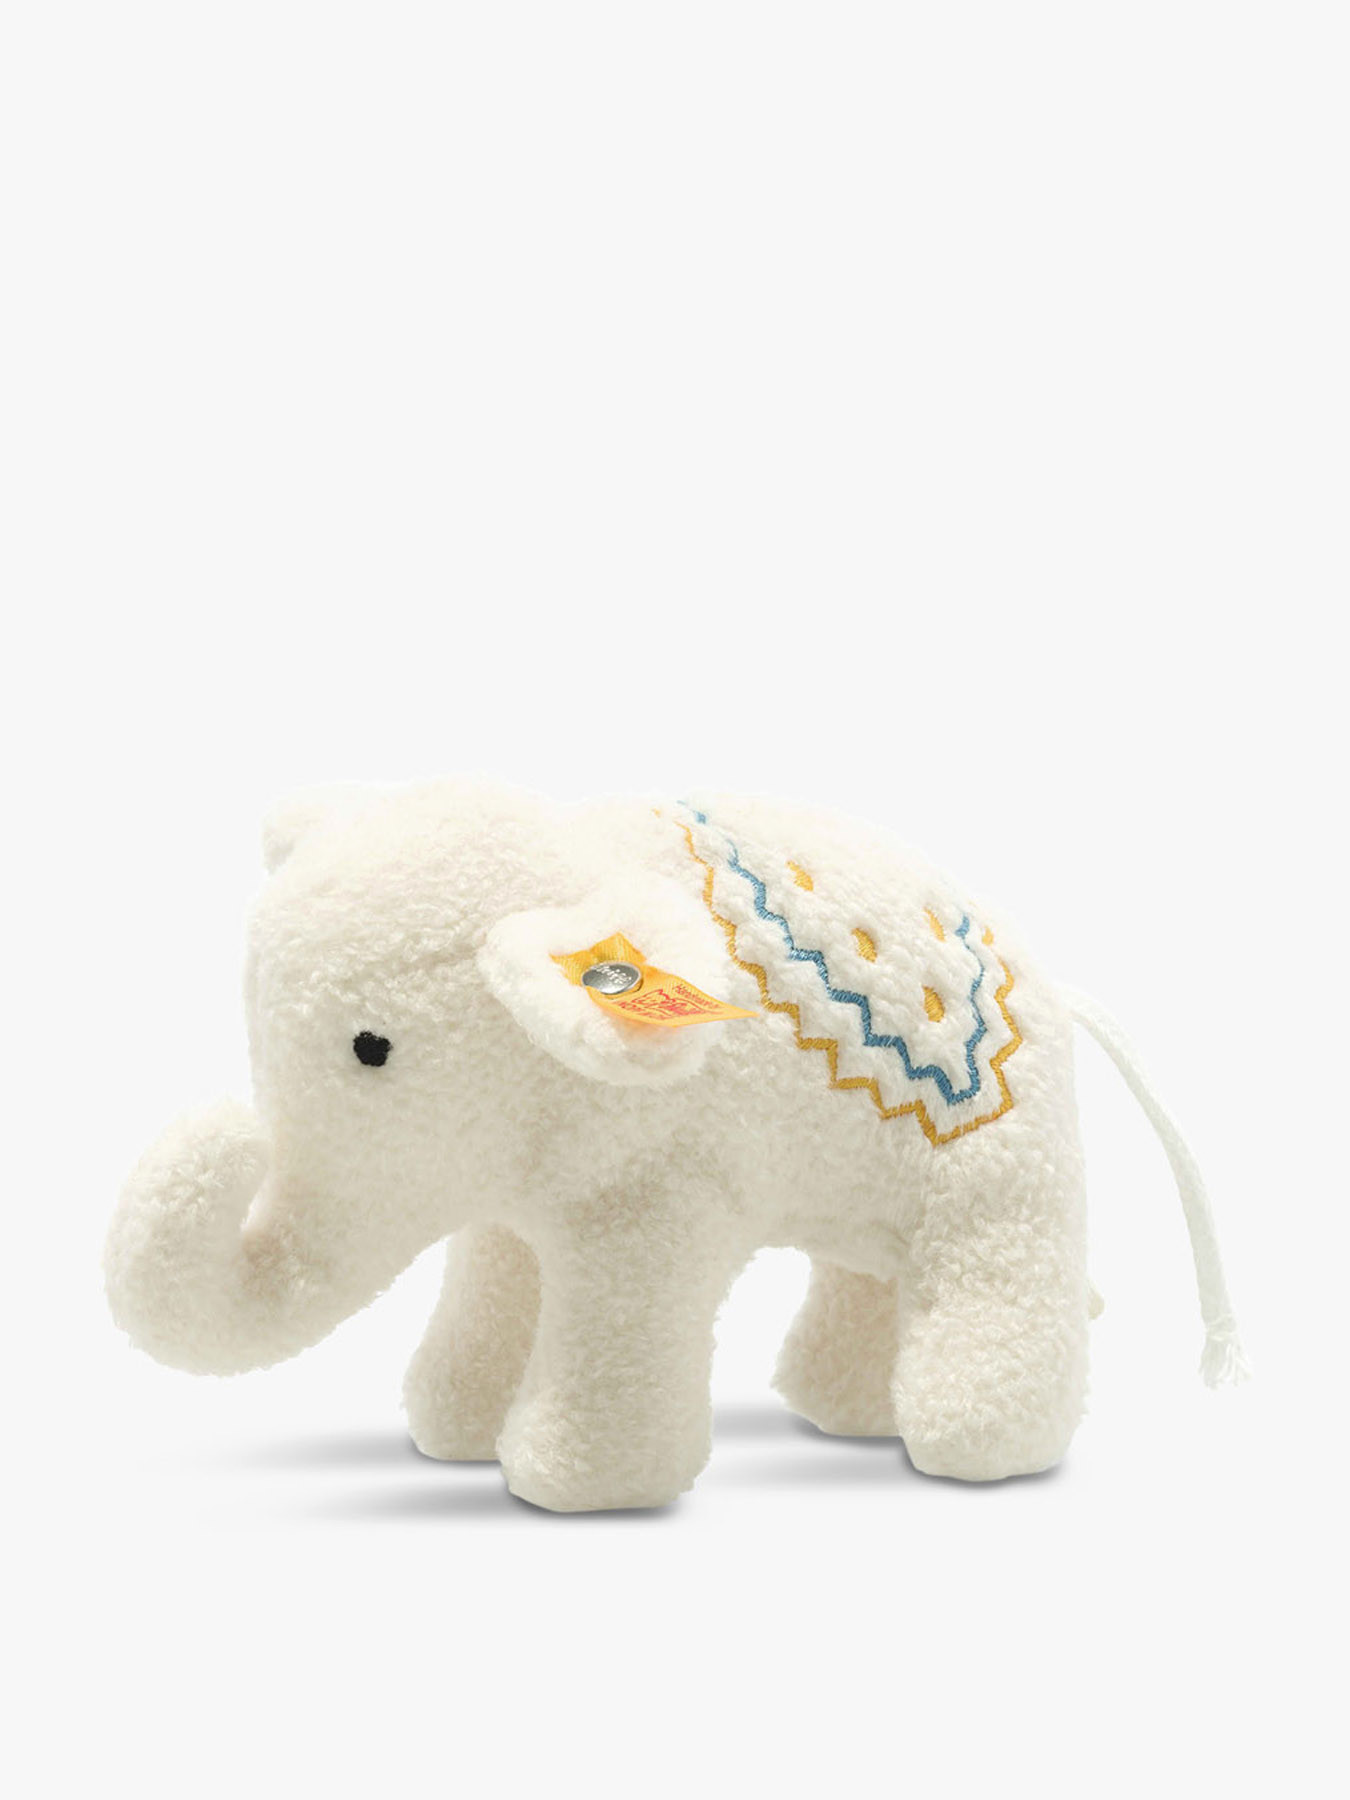 little elephant toy